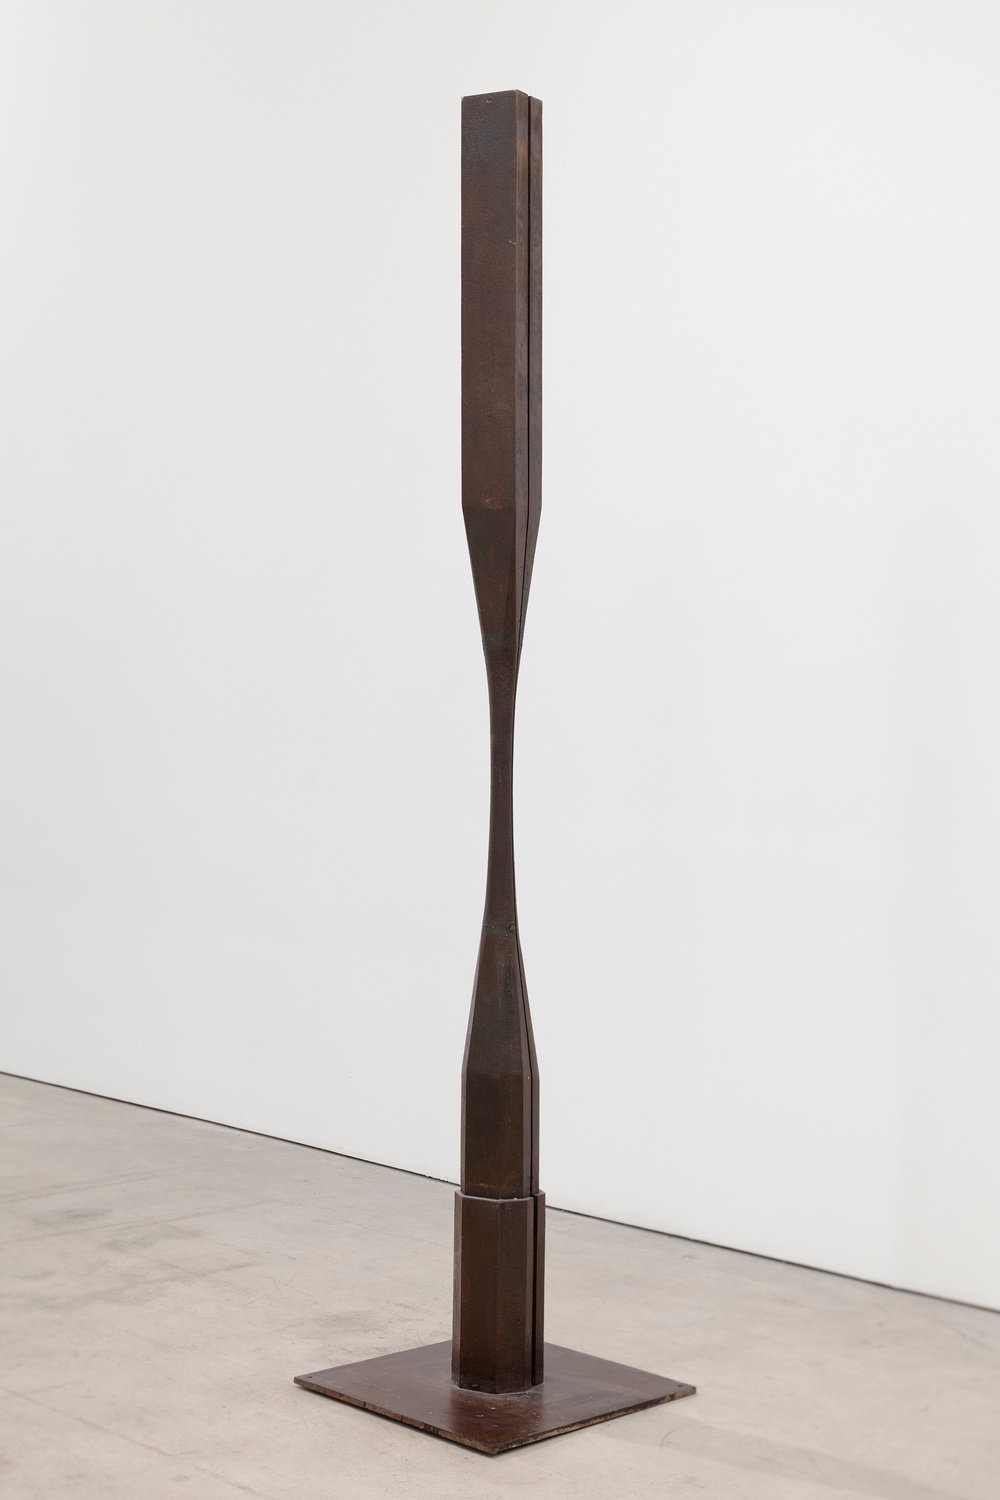 Pepper, coupled column (view 1), 1981, ductile iron, unique, 126 3:4 x 20 x 20 in., 321.9 x 50.8 x 50.8 cm, cnon 61.889 pierre le hors